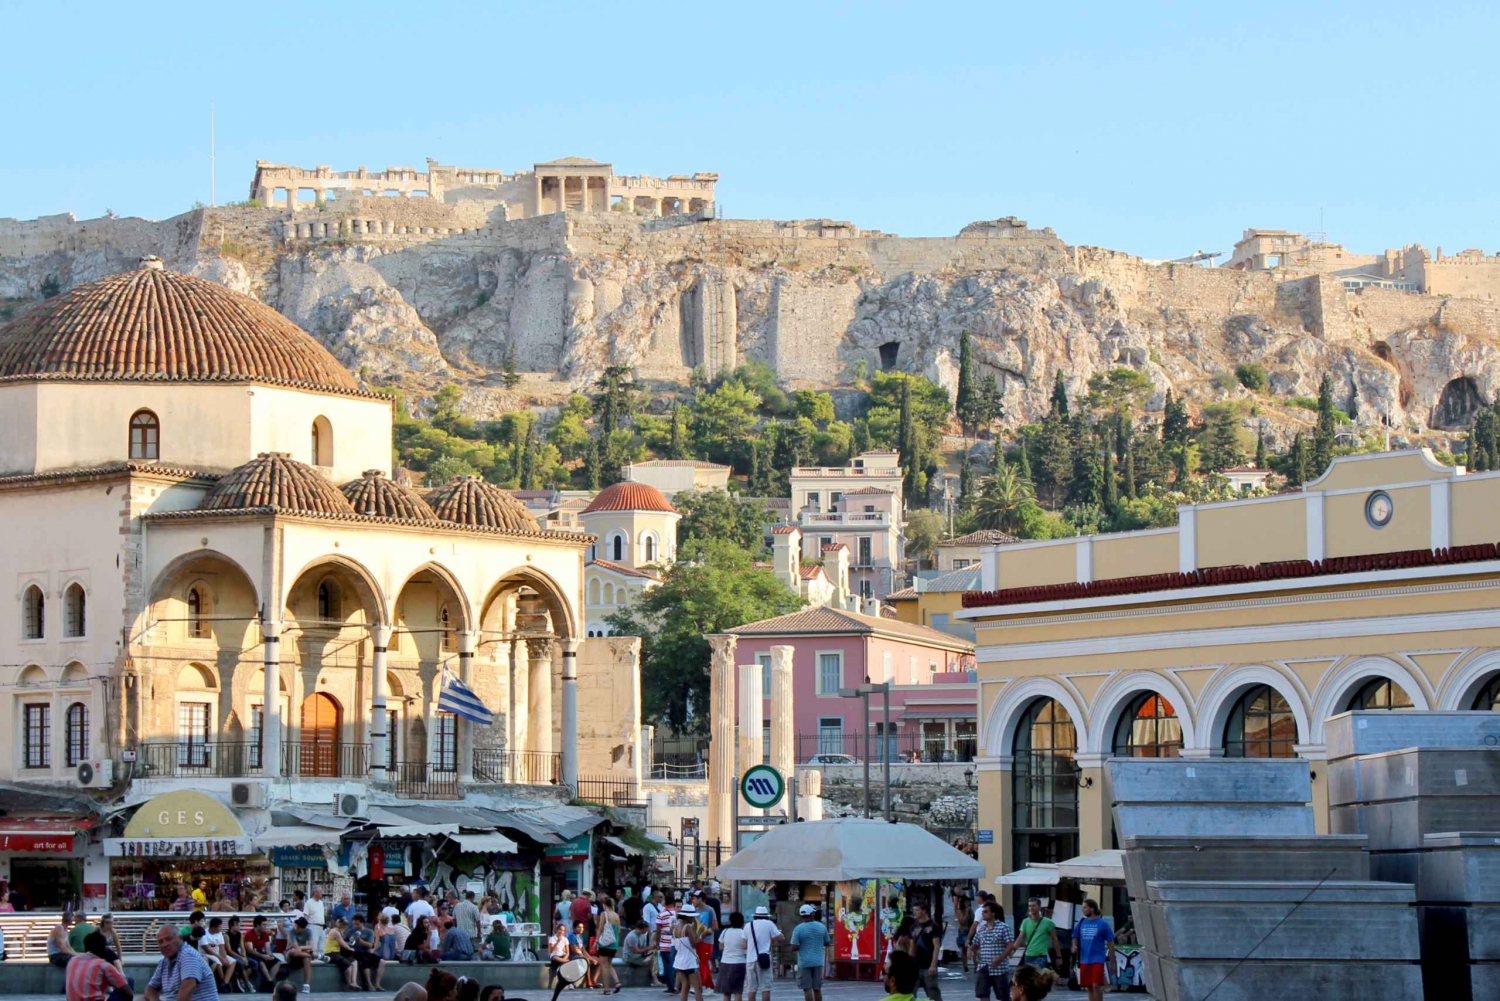 Puerto del Pireo: Traslado privado de ida al centro de Atenas